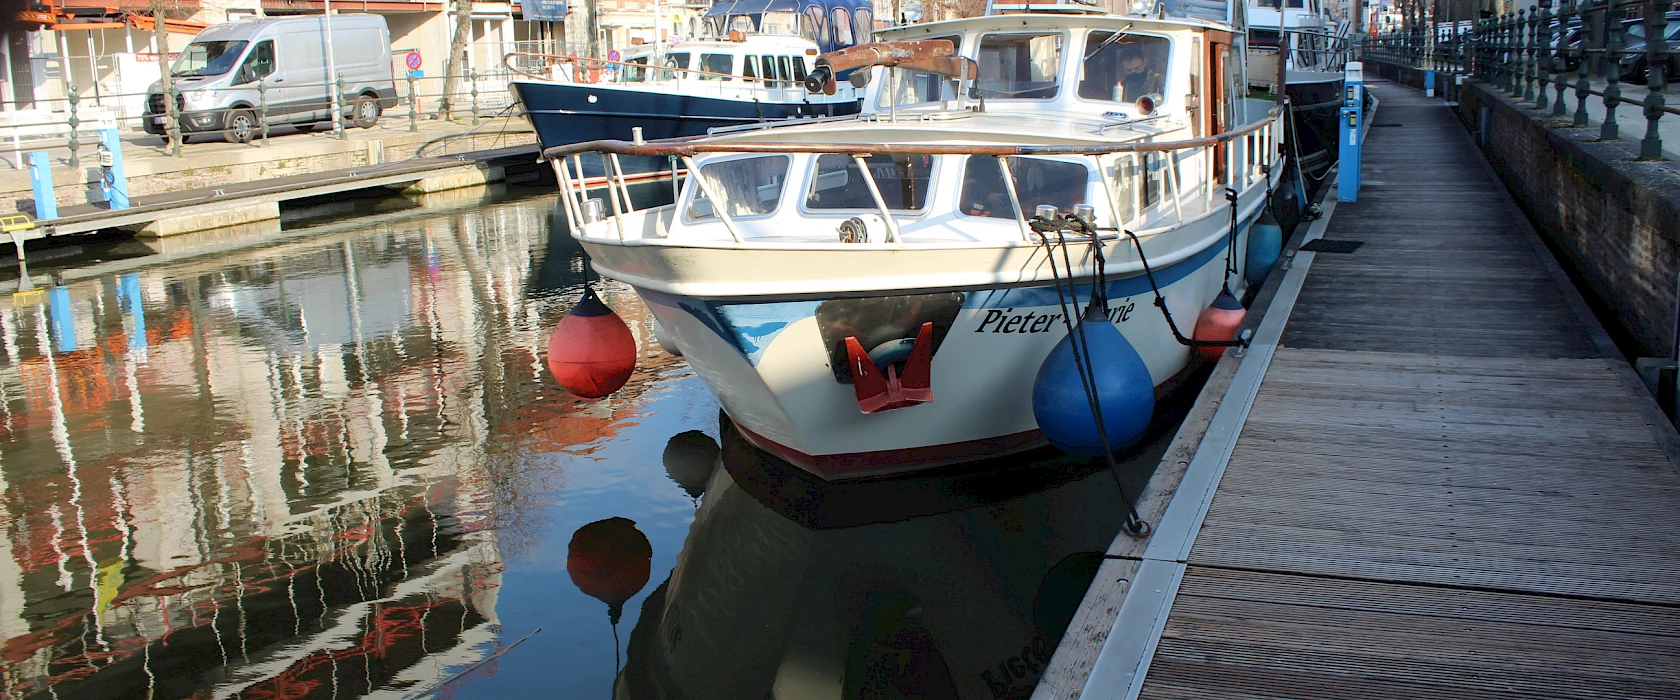 Huysman Yacht bootverzekeringen